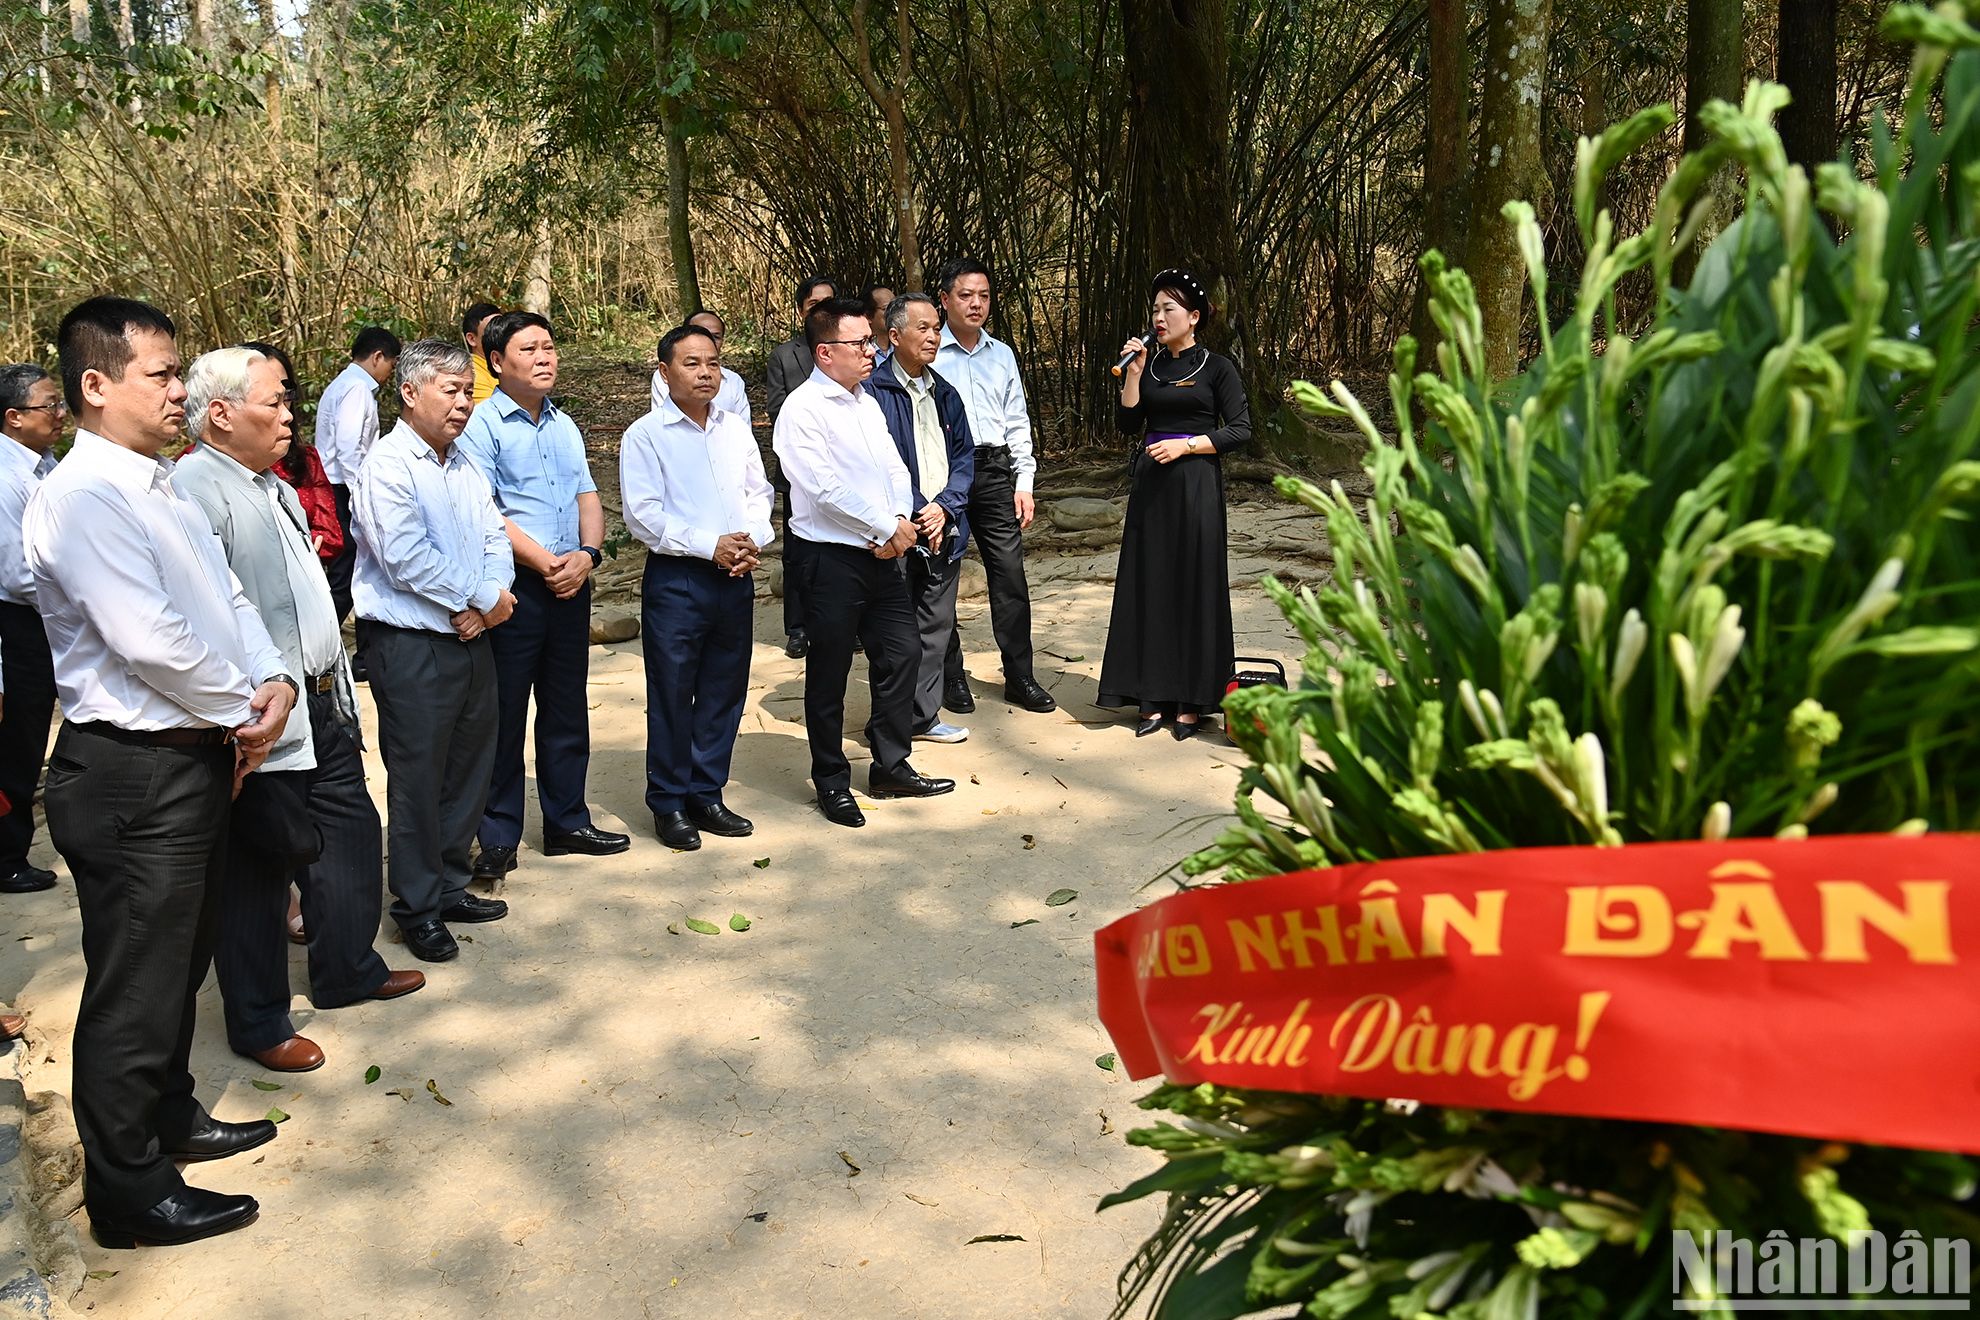 Delegación de Nhan Dan visita complejo de reliquias revolucionarias en el norte